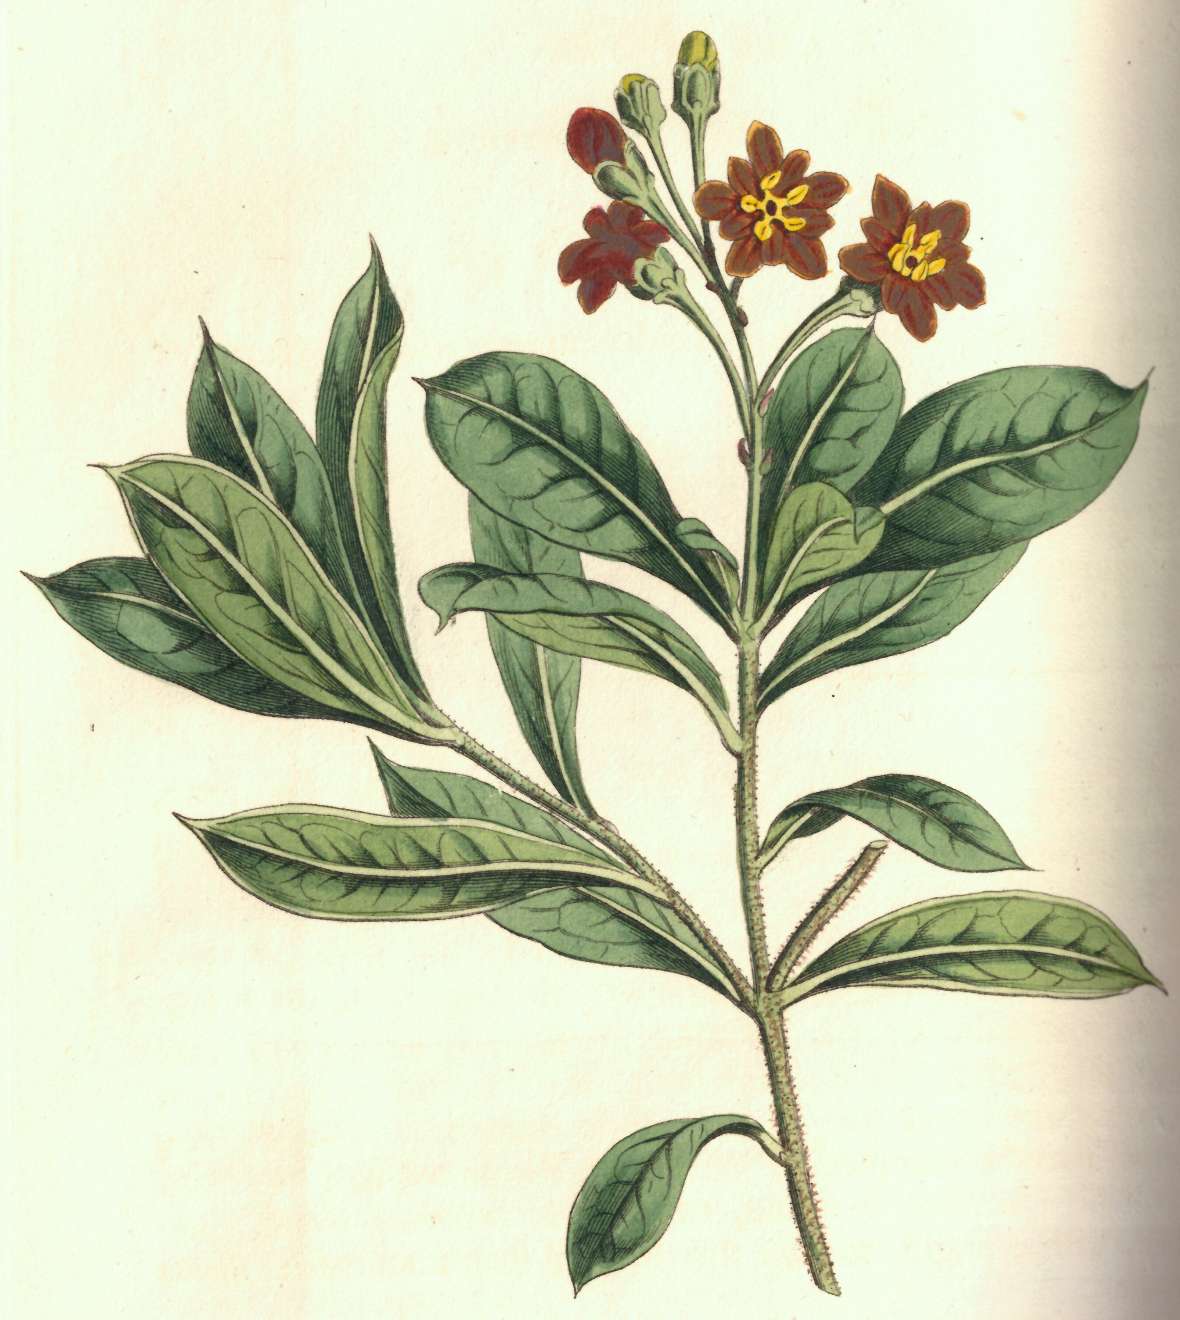 zu sehen ist eine Pflanze mit grünem Stängel und Blättern und roten Blüten